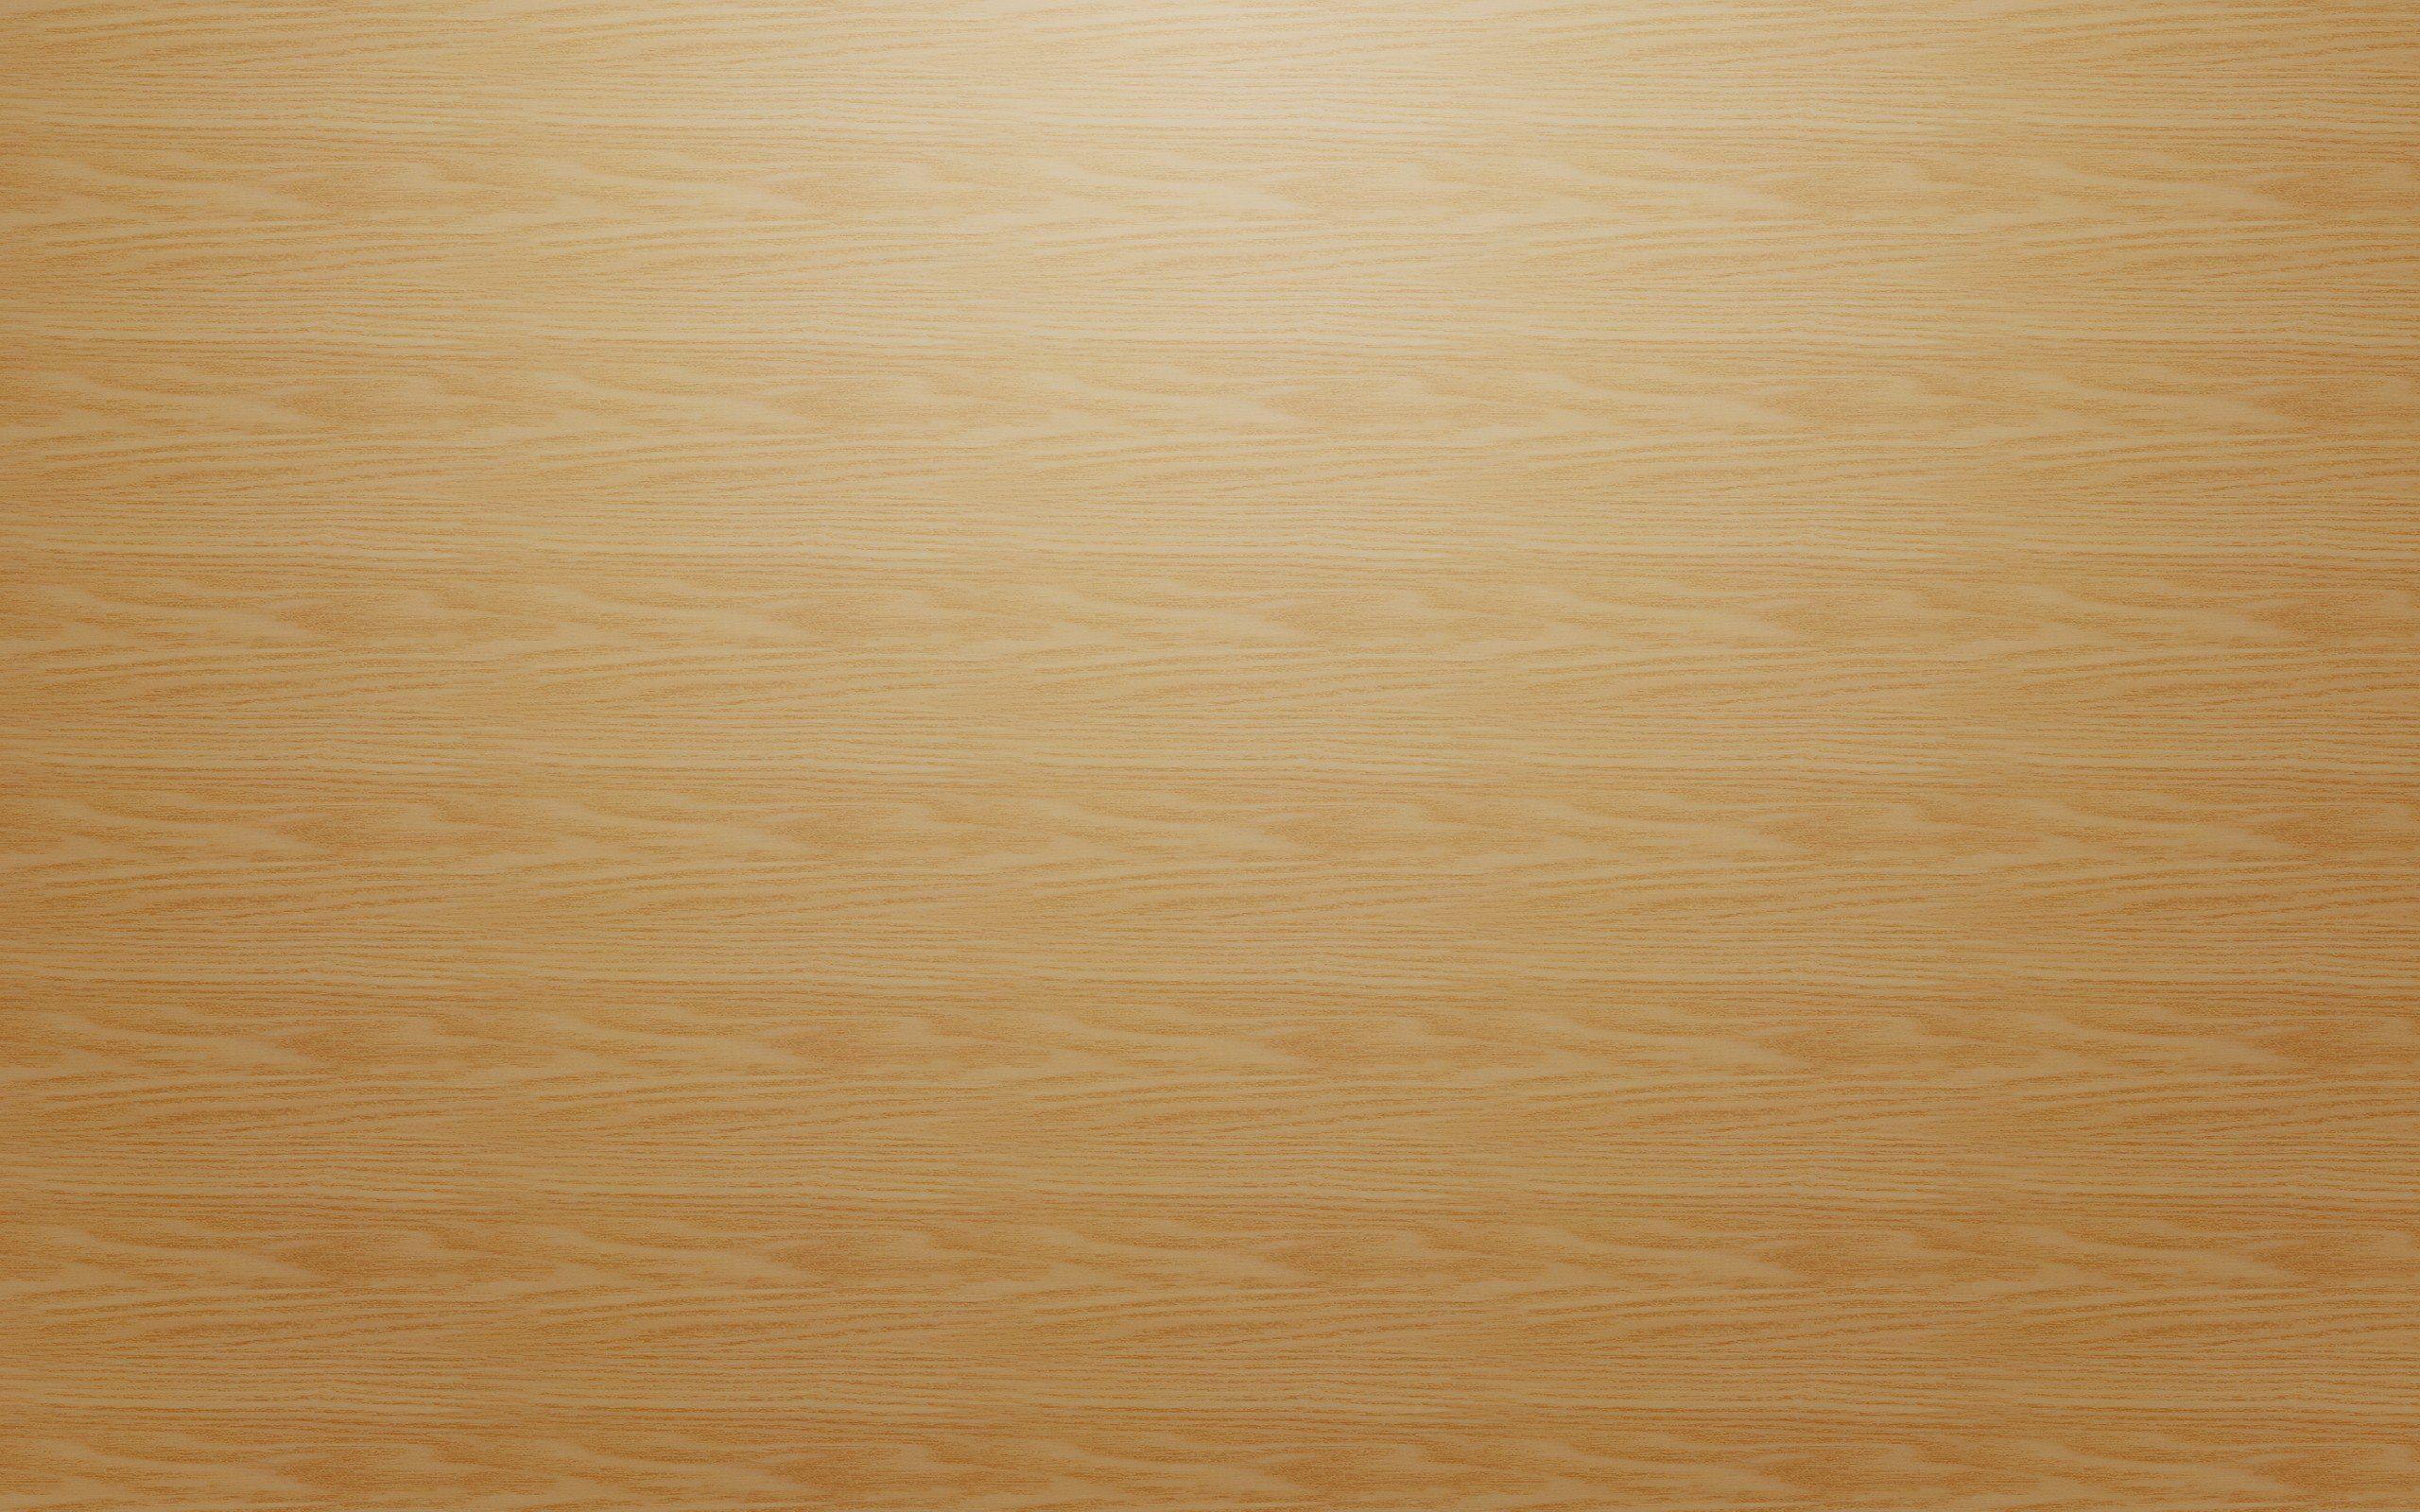 2560x1600 Giấy dán tường hoa văn sàn gỗ sáng màu.  2560x1600